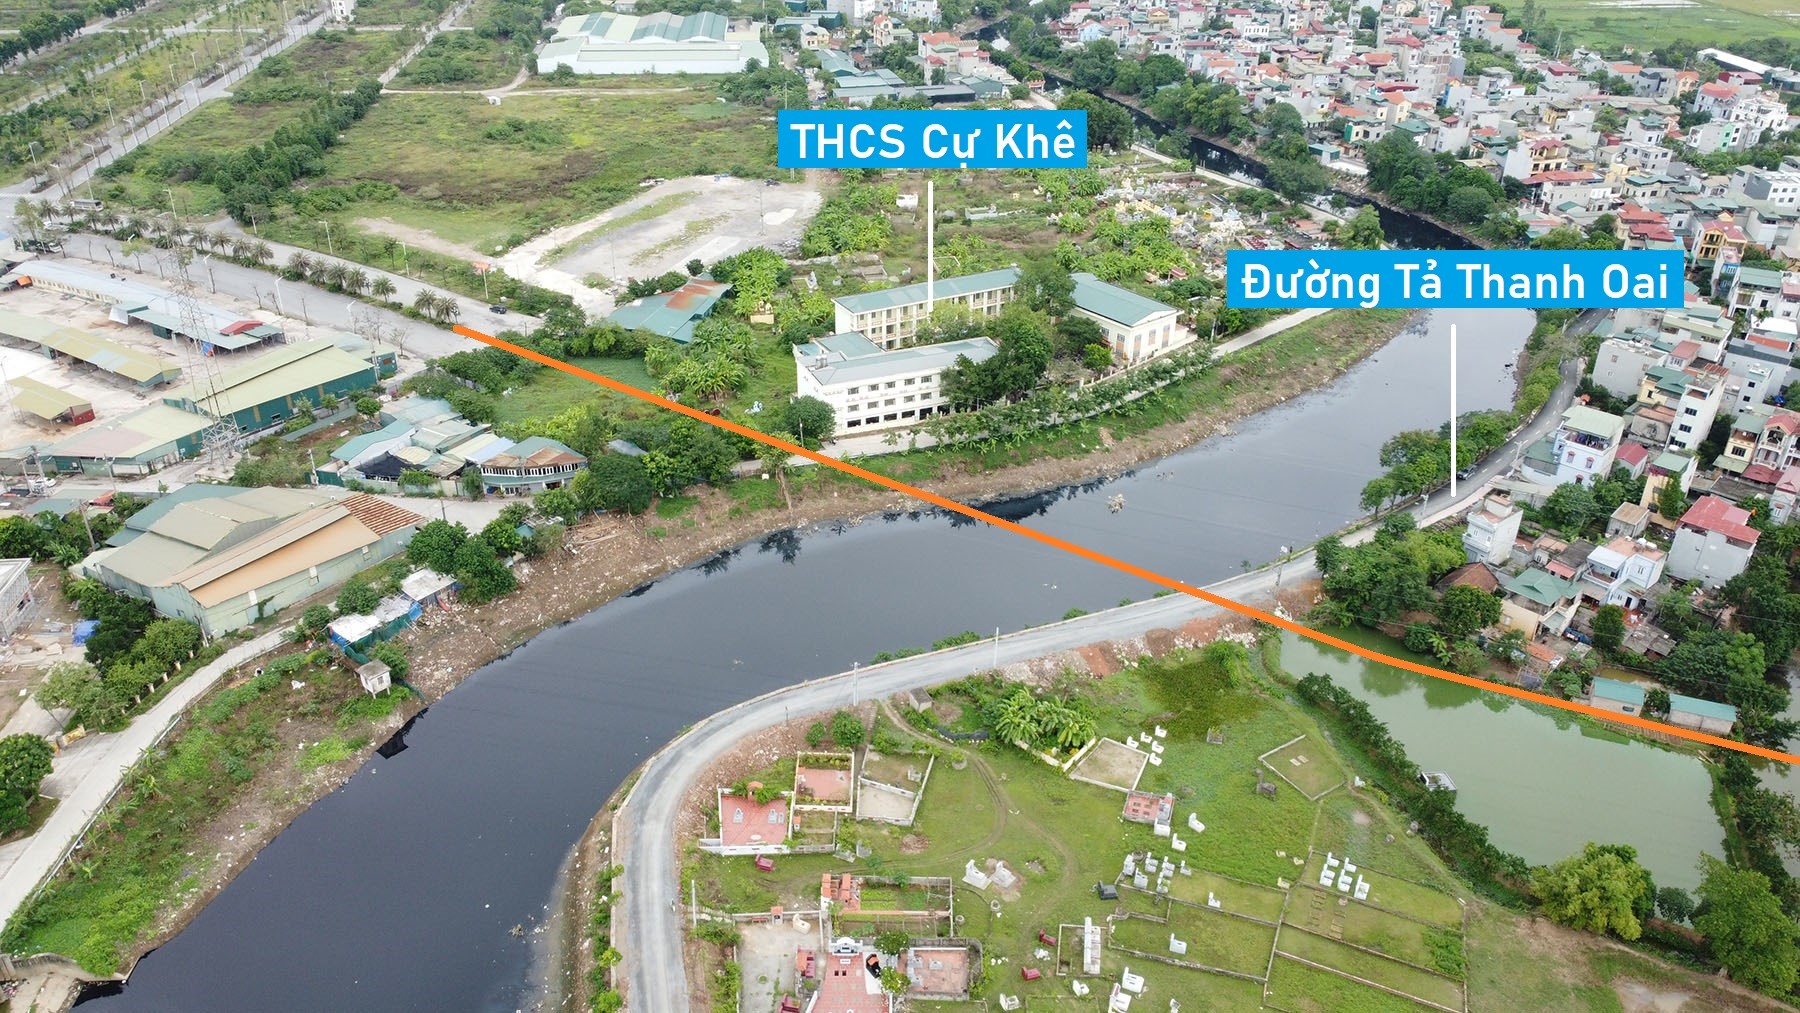 Toàn cảnh vị trí quy hoạch xây cầu vượt sông Nhuệ nối huyện Thanh Trì - Thanh Oai, Hà Nội